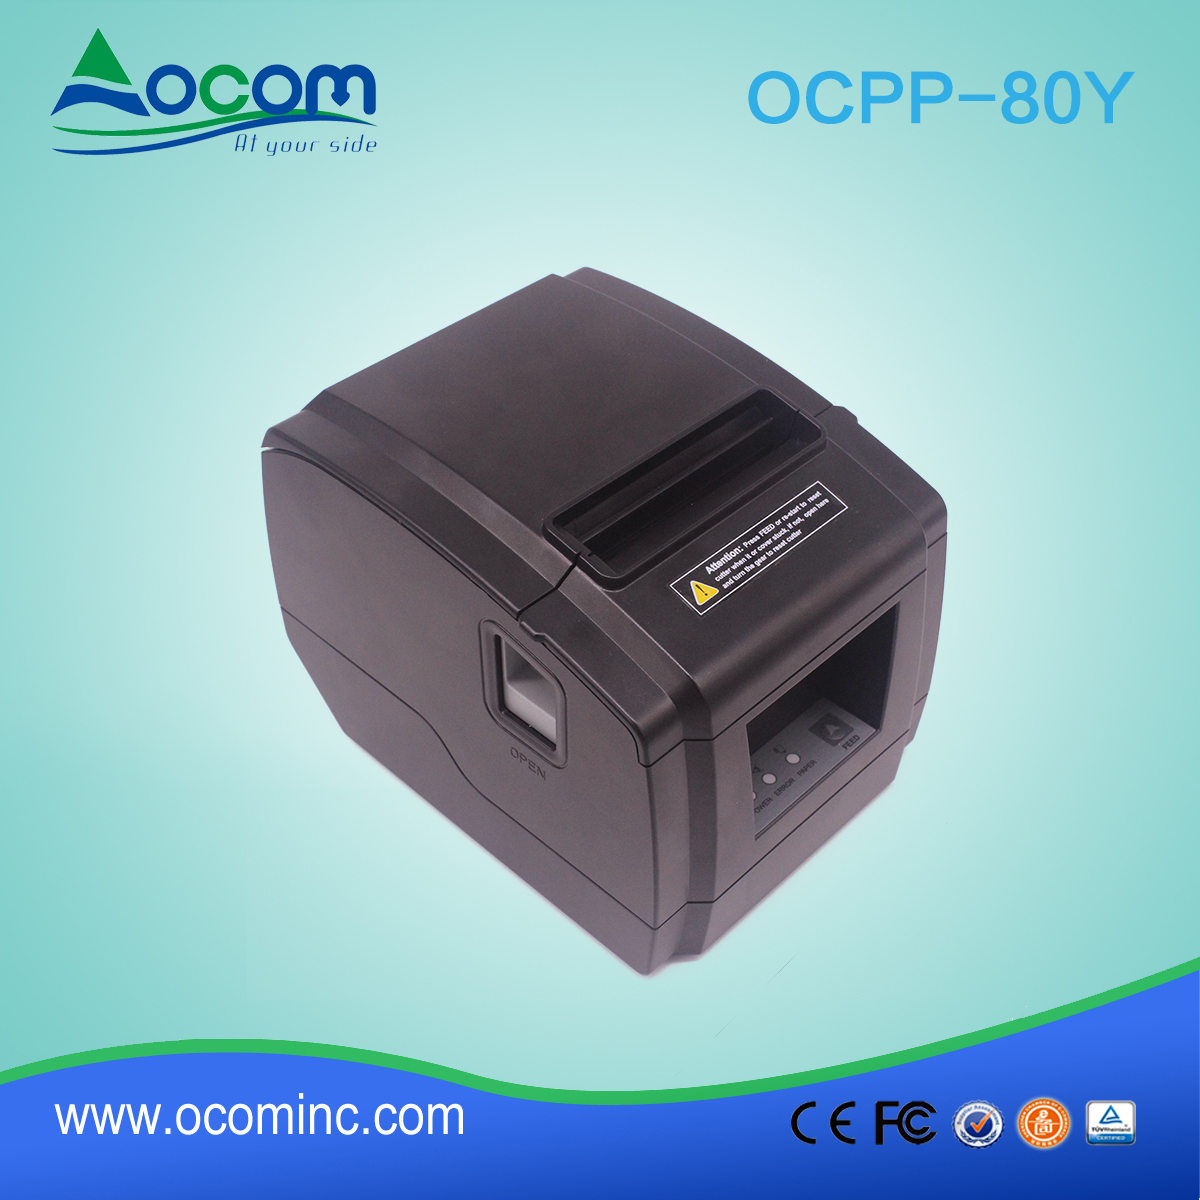 OCPP-80Y-Low costo 3 "stampante di ricevute POS taglierina automatica